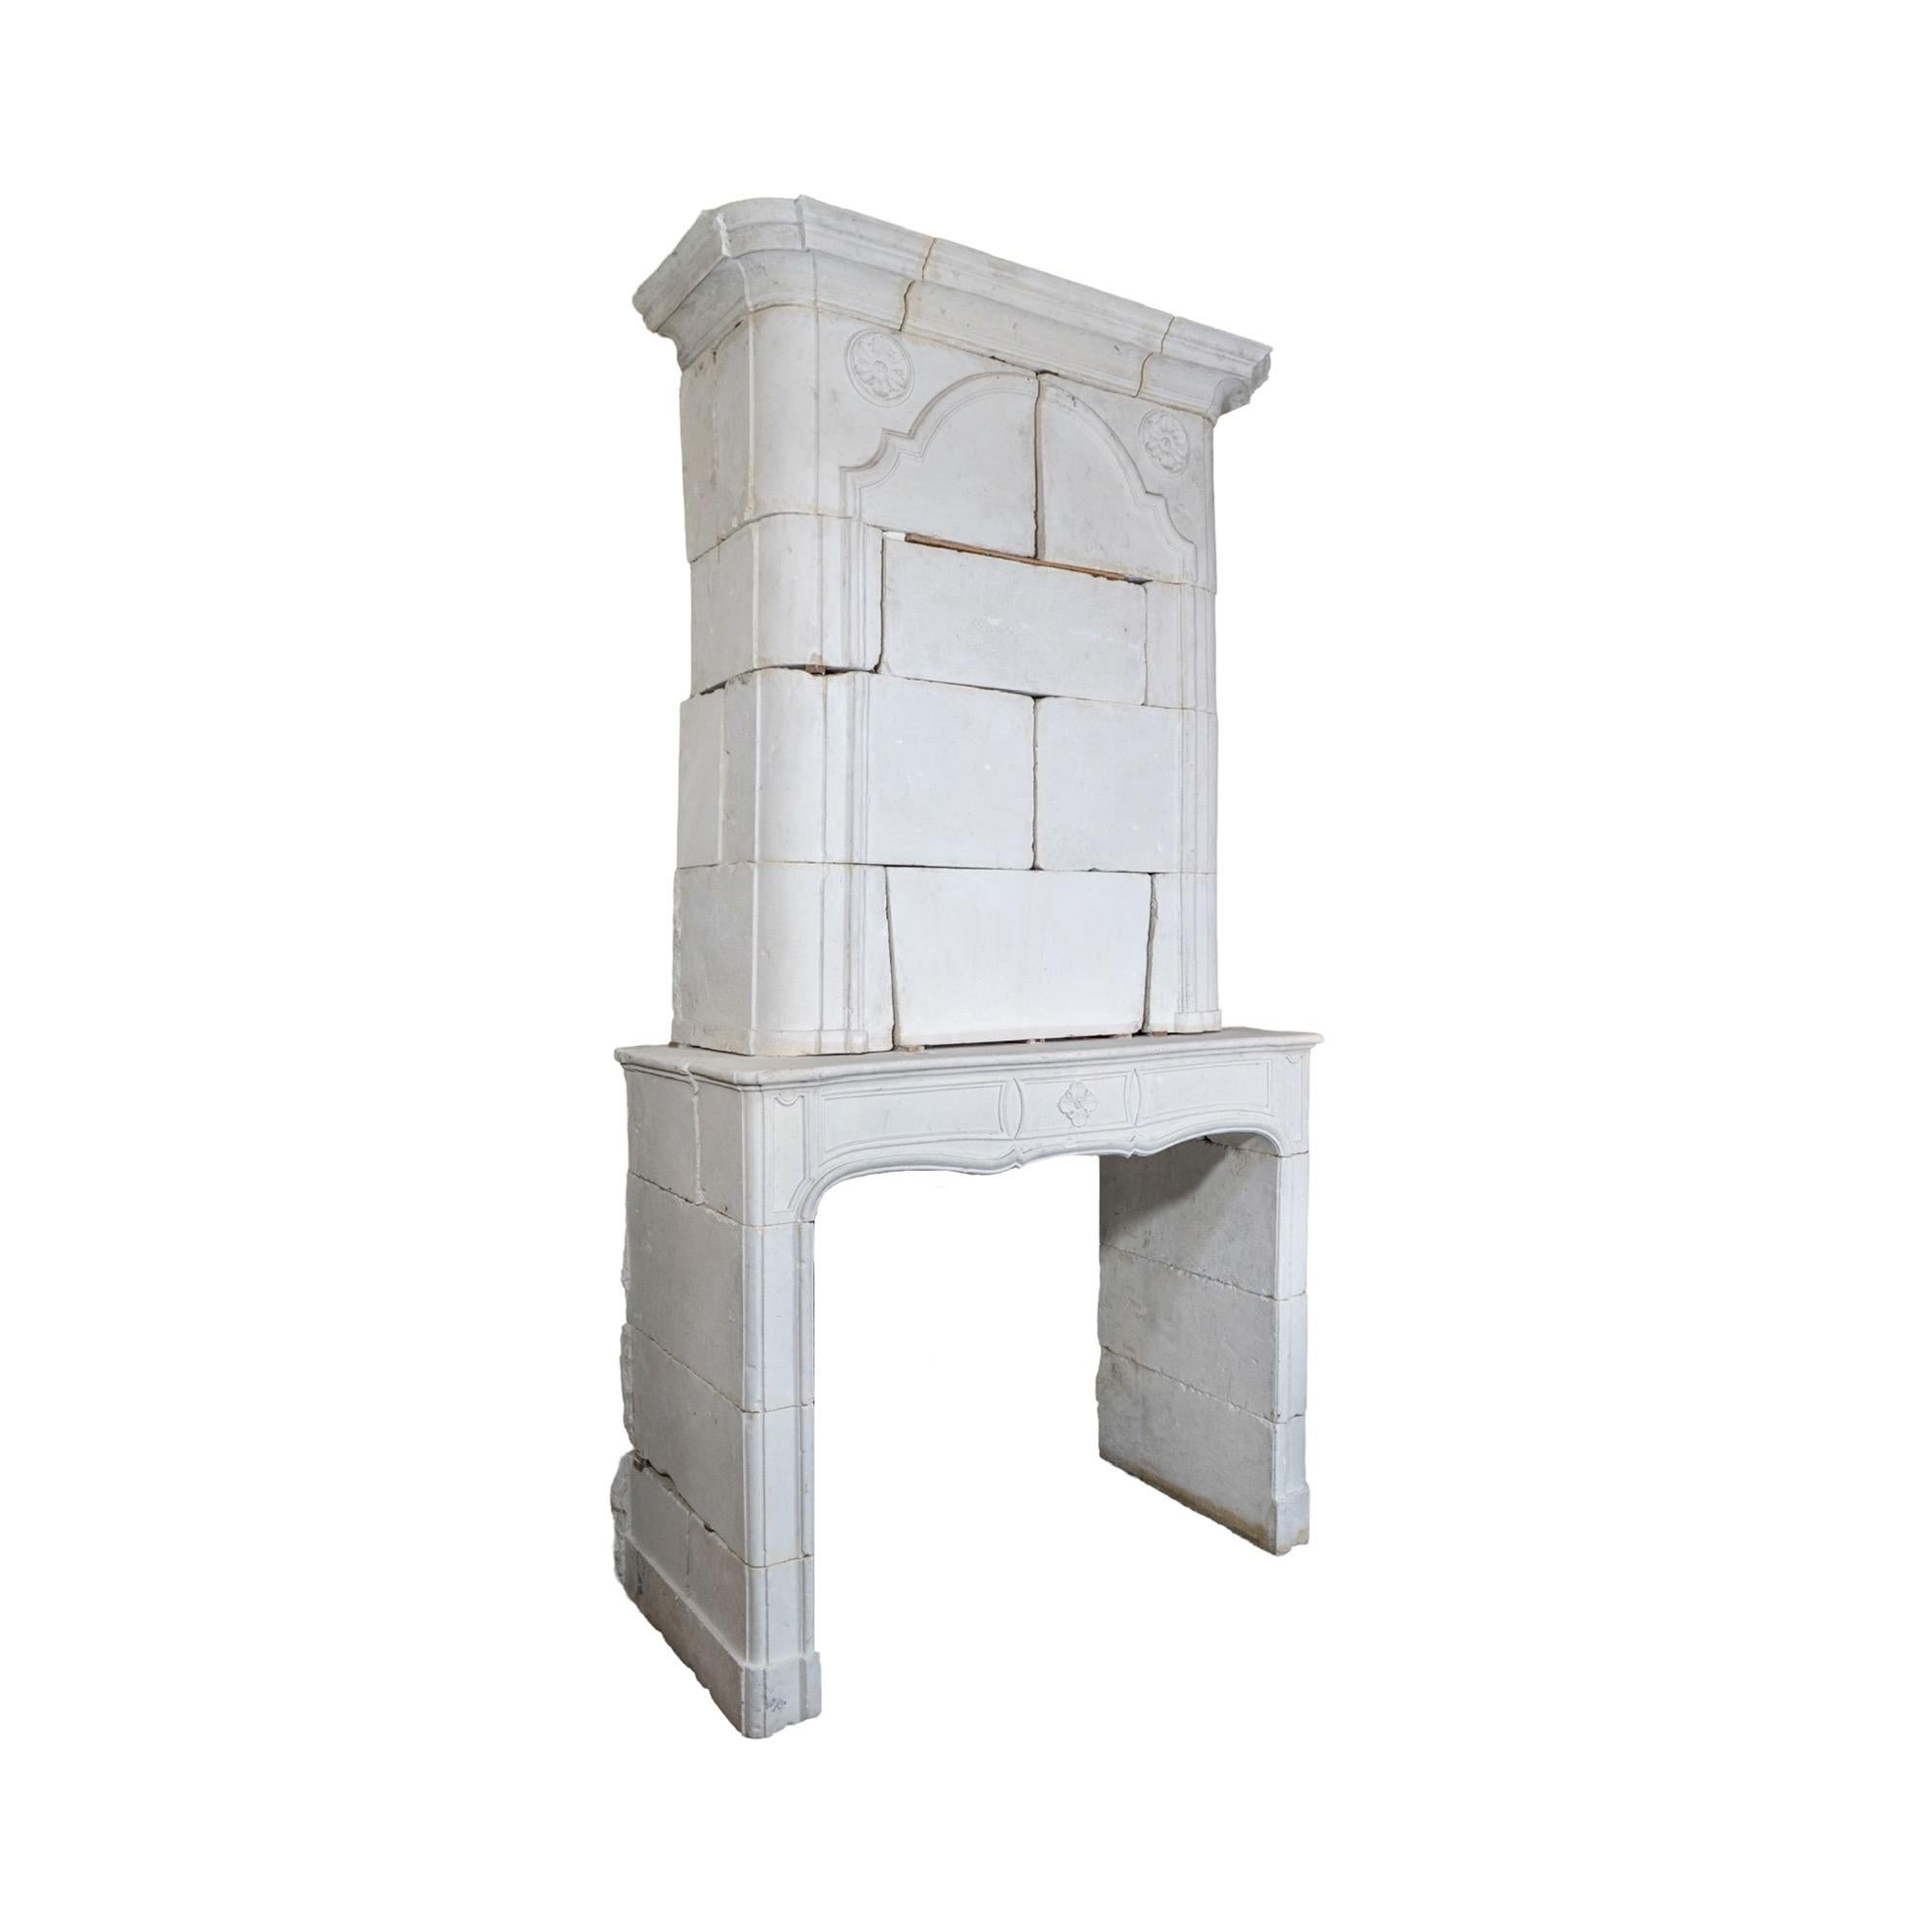 Cette cheminée en pierre calcaire française est une belle pièce du XVIIIe siècle de la période Louis XV en France. Il présente un trumeau classique, ce qui en fait un complément parfait et intemporel pour toute maison.